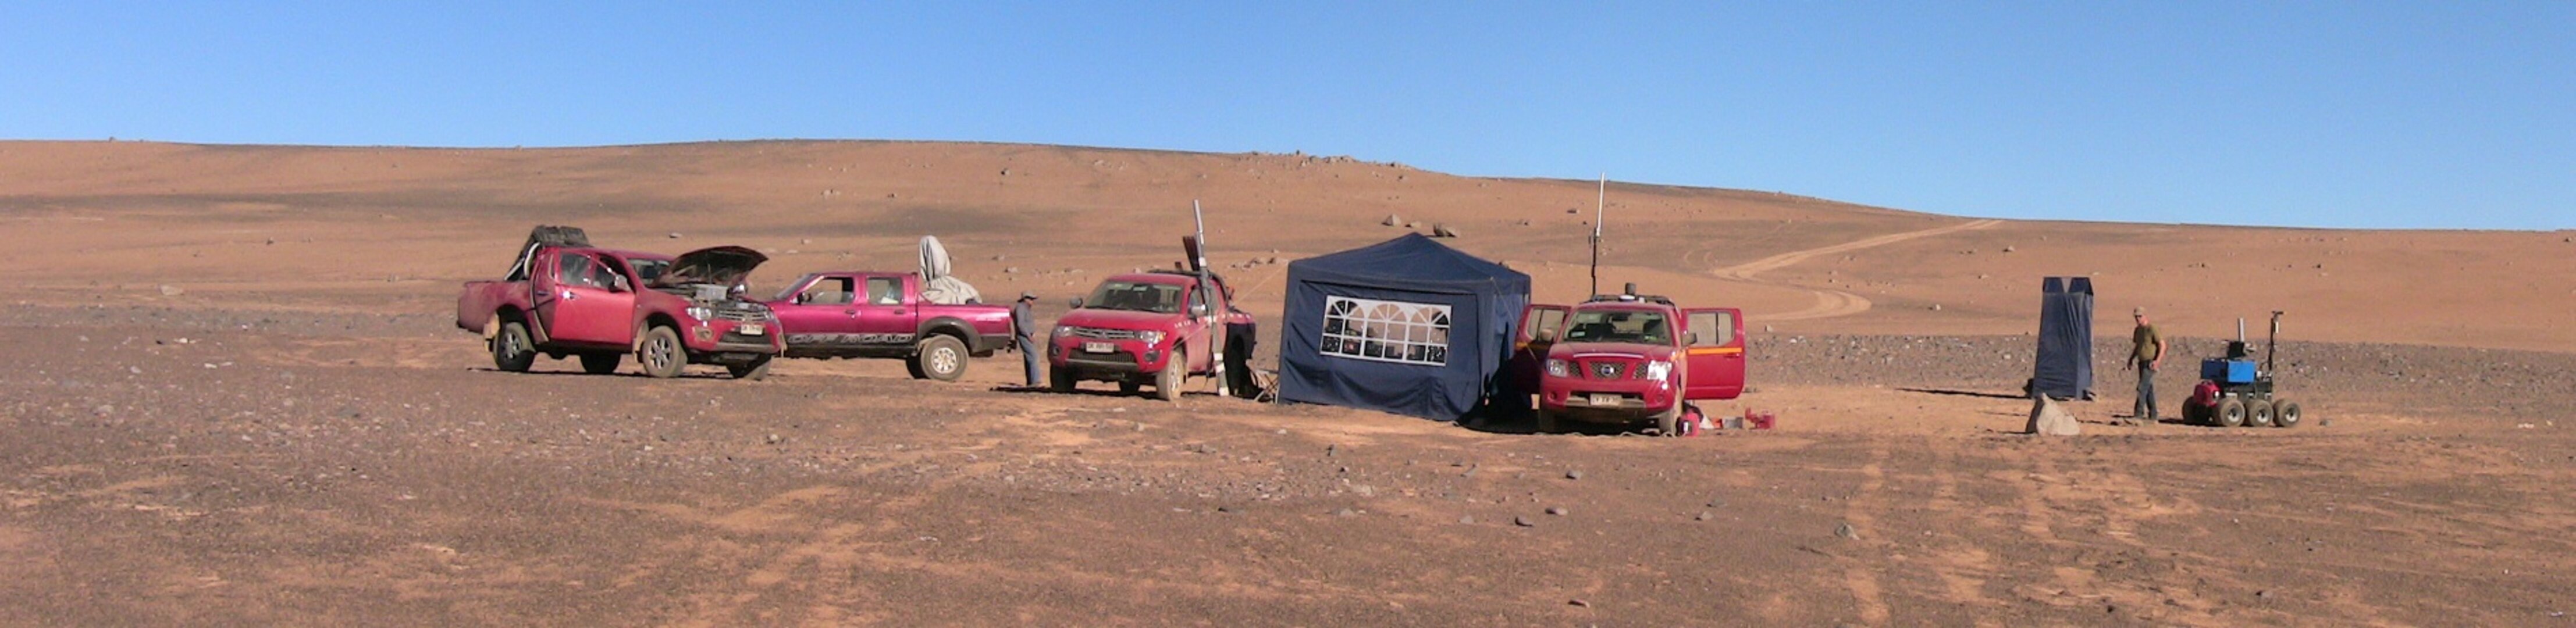 Desert base camp